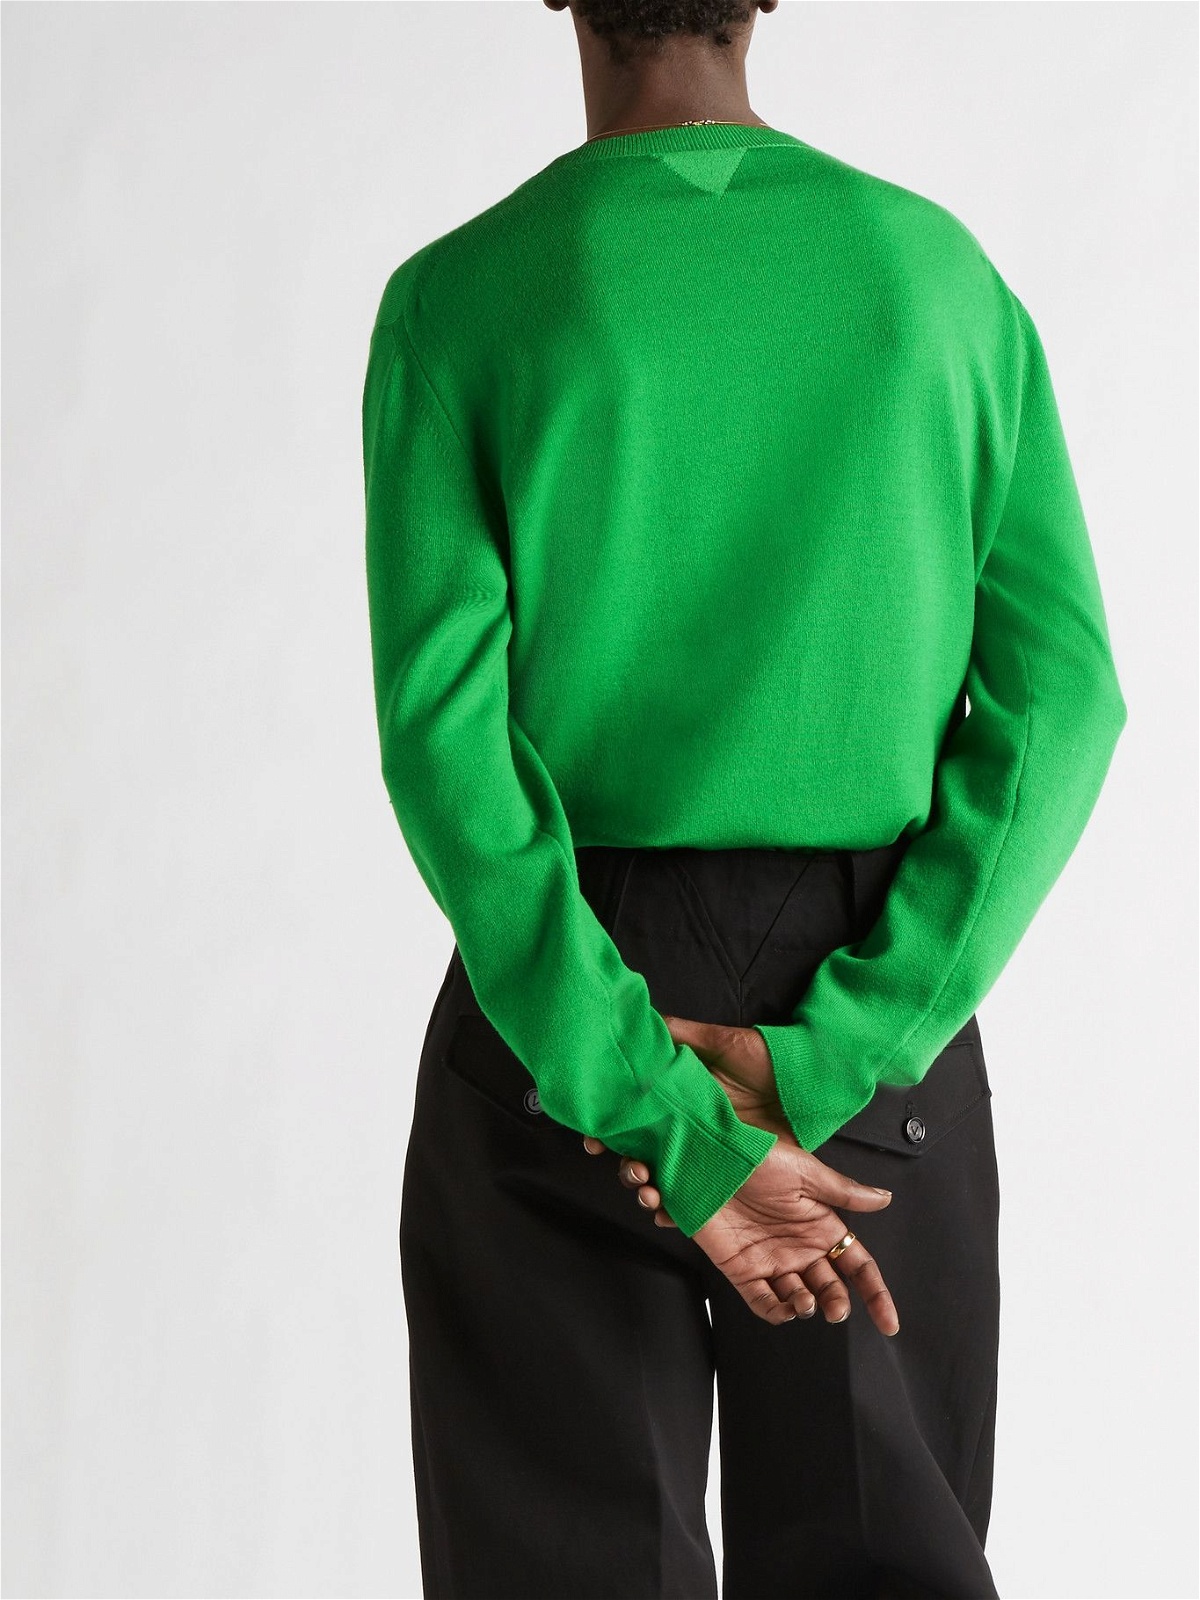 BOTTEGA VENETA - Cashmere-Blend Sweater - Green Bottega Veneta